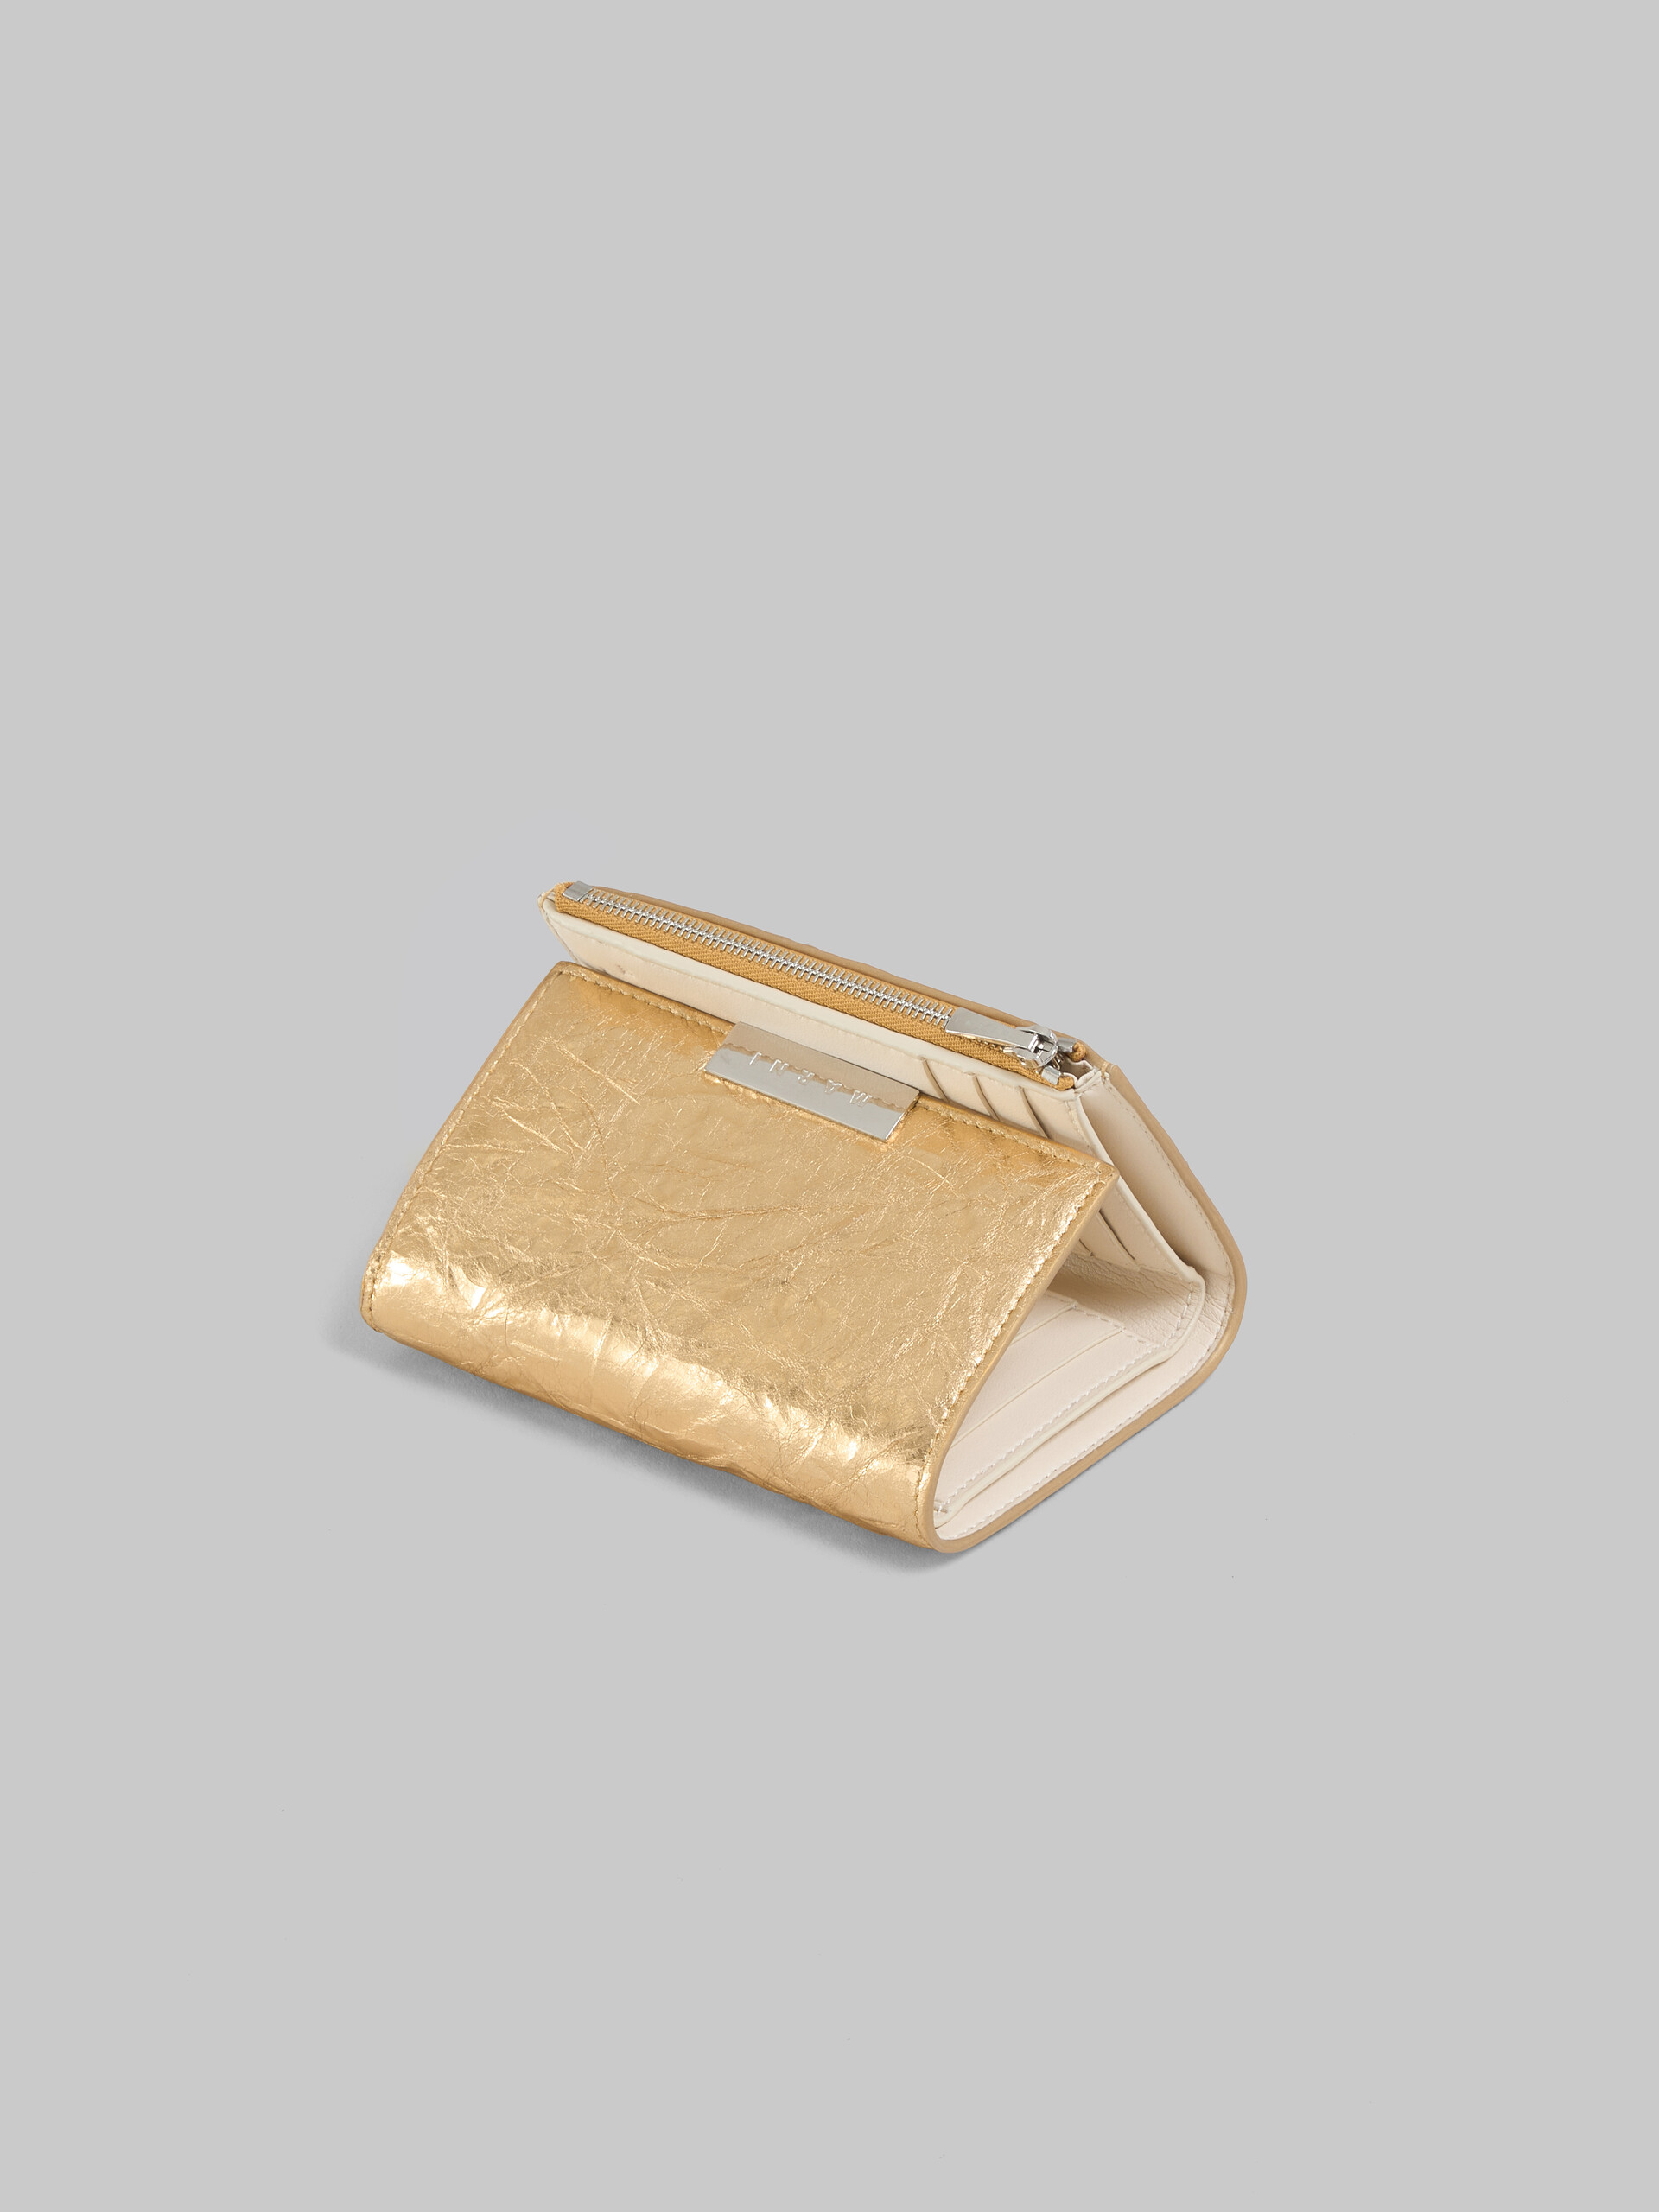 シルバー レザー製 三つ折り Prisma ウォレット - 財布 - Image 4